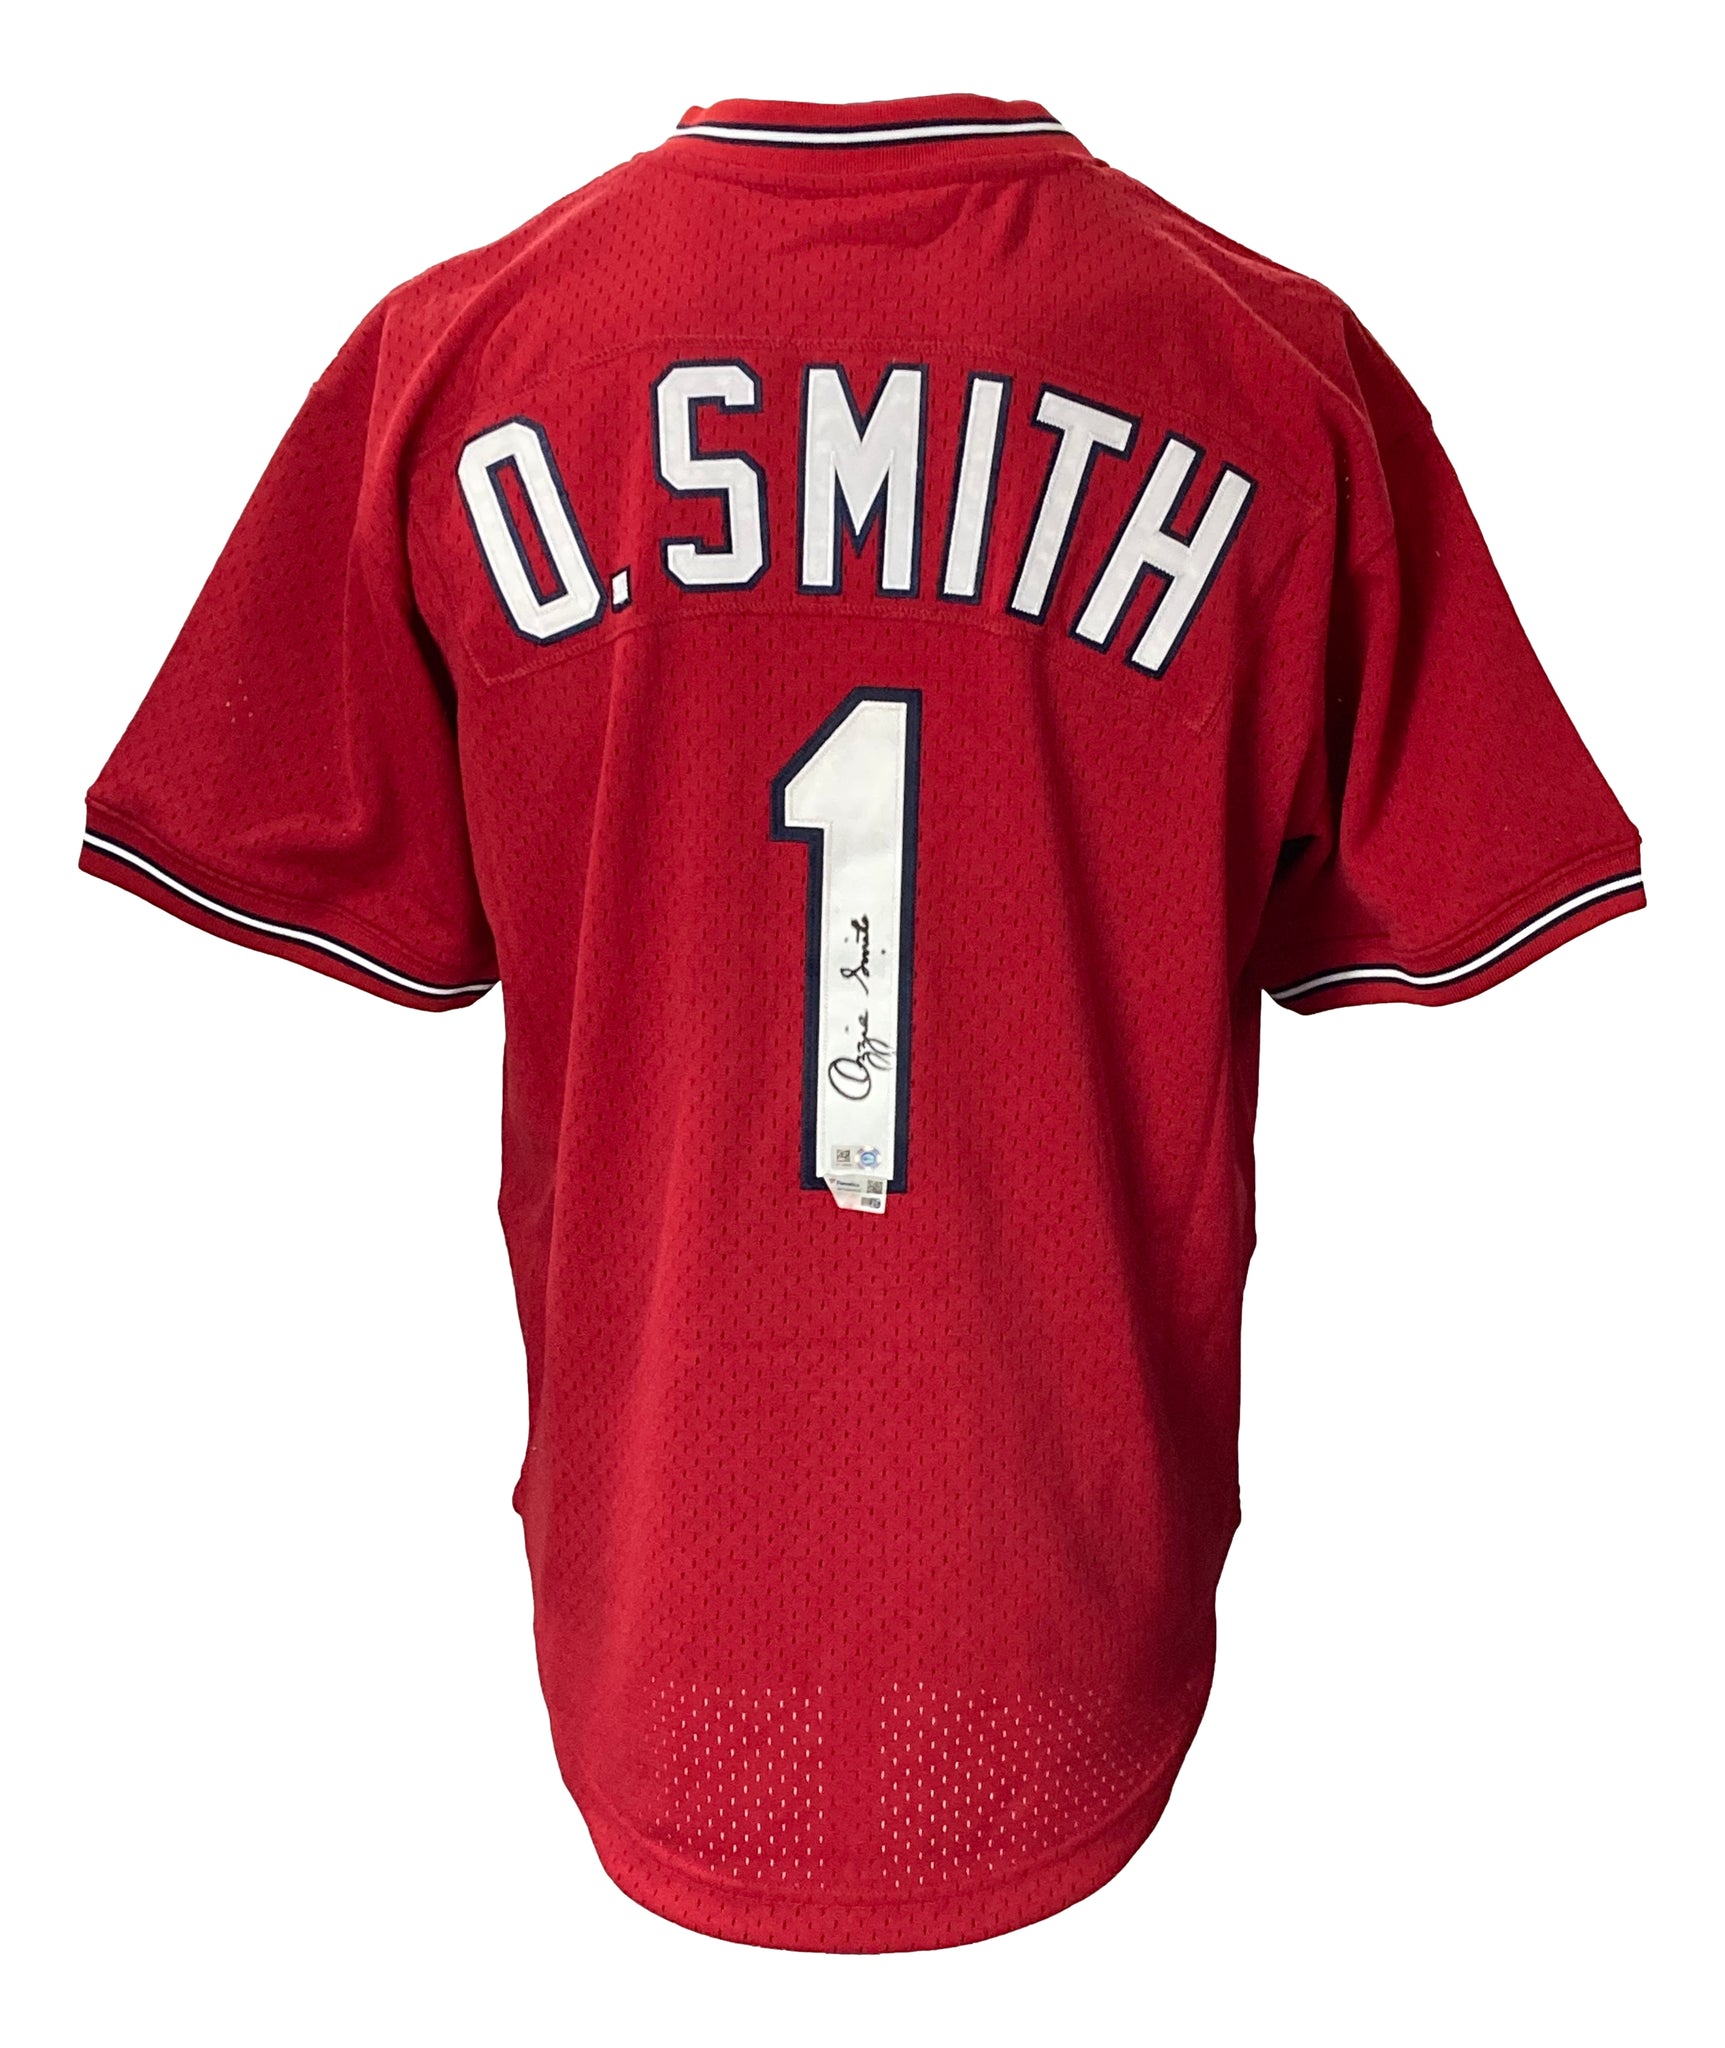 Ozzie Smith St. Louis Cardinals Autographed Mini Batting Helmet